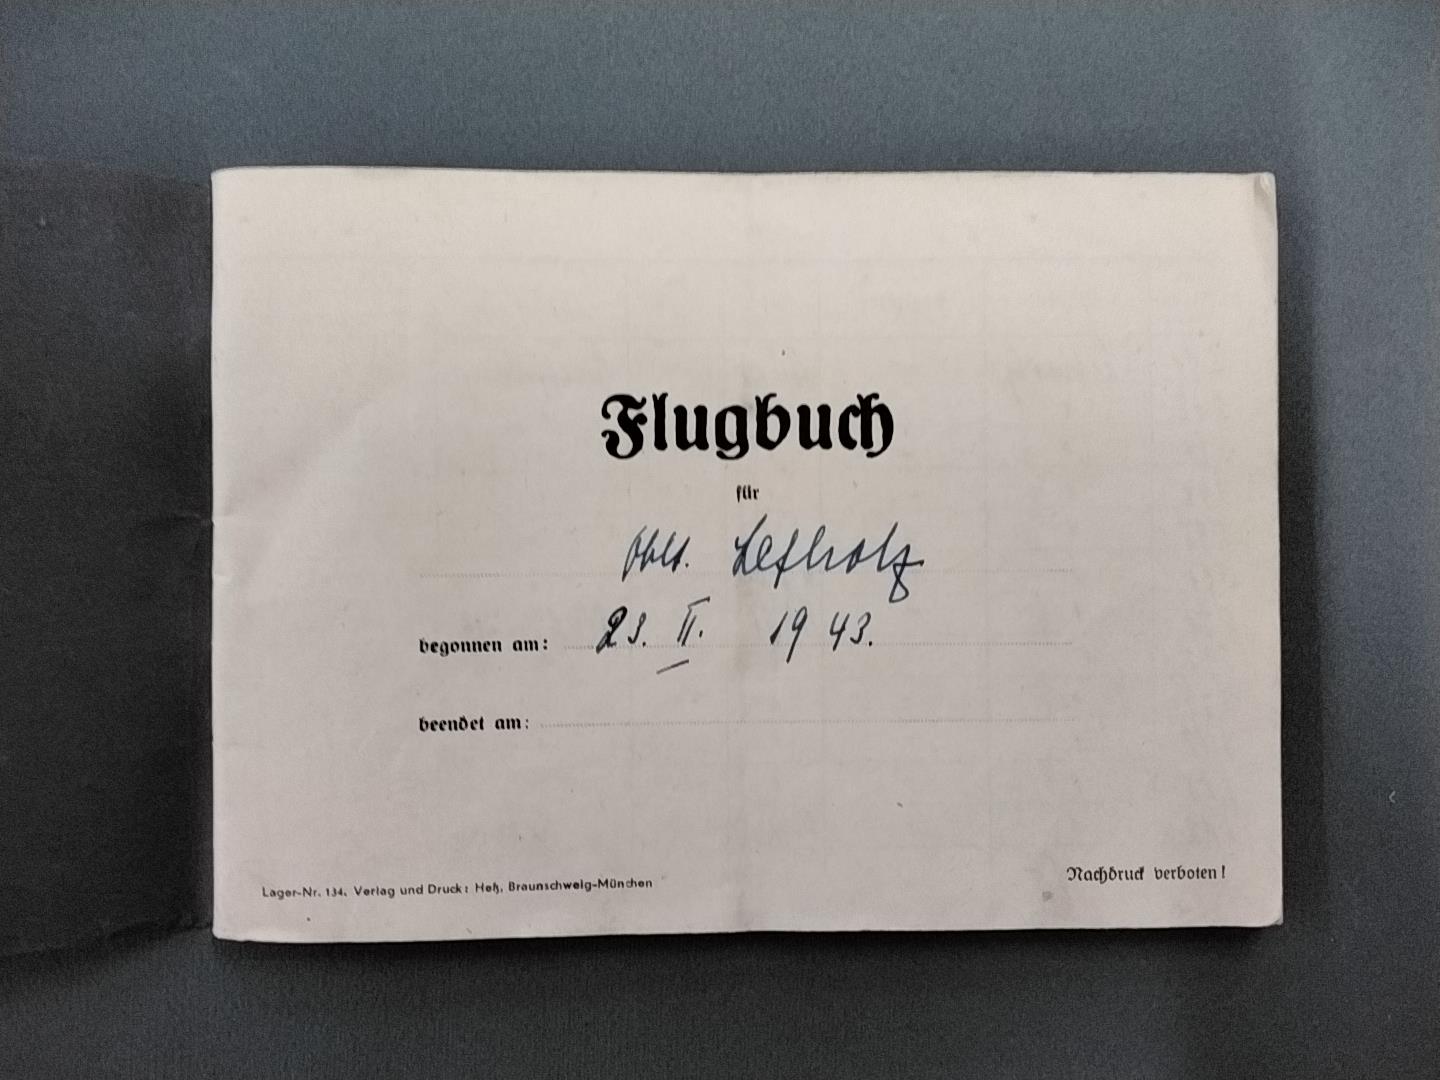 Log Book. WWII Luftwaffe pilots log book kept by Oberleutnant Lefholz